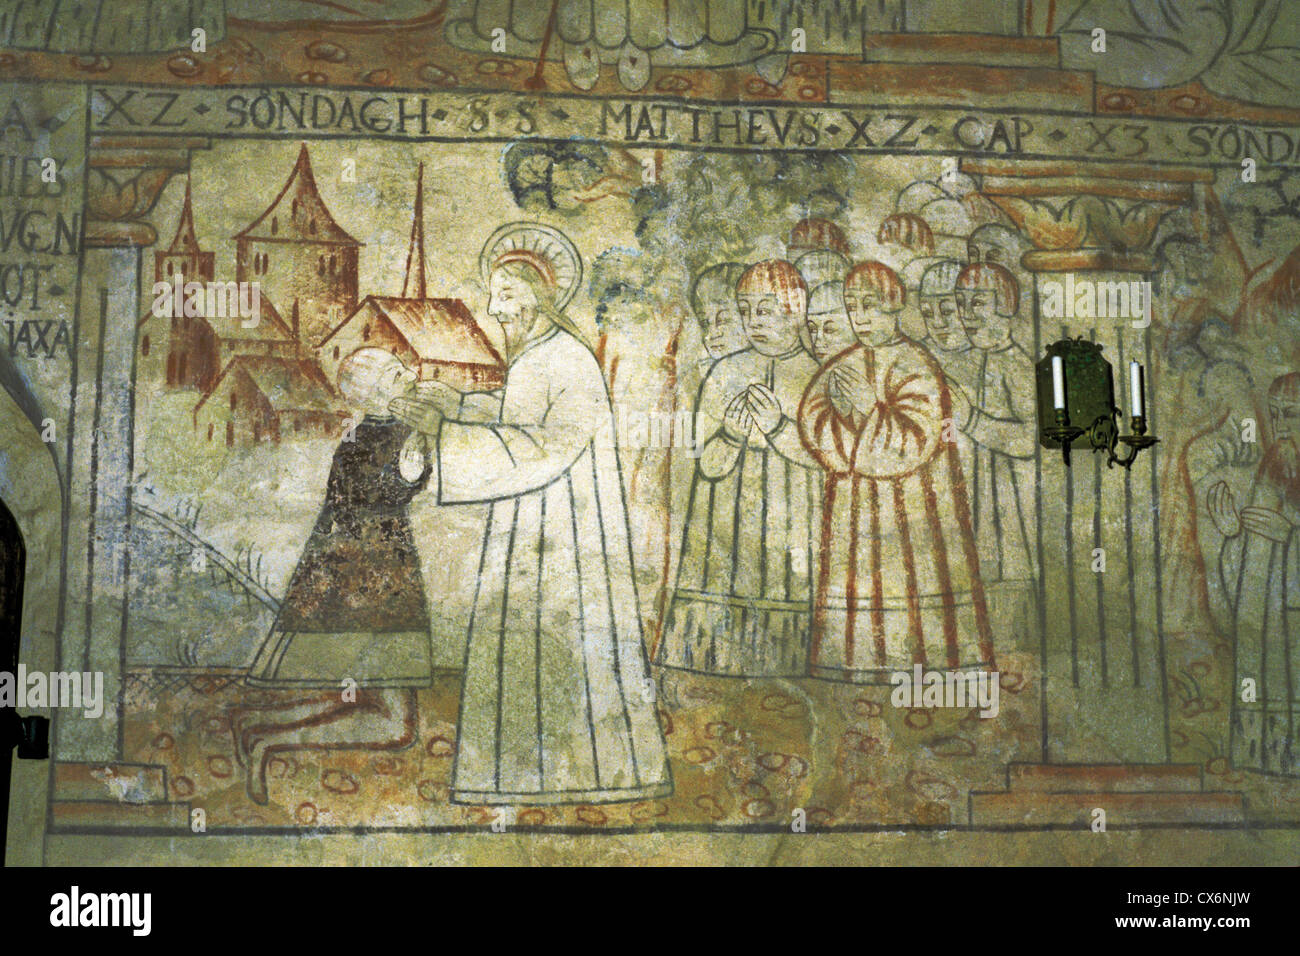 Photo murale avec une représentation de Jésus Christ dans la cité médiévale de l'église Saint-Laurent, Isokyro La Finlande Banque D'Images